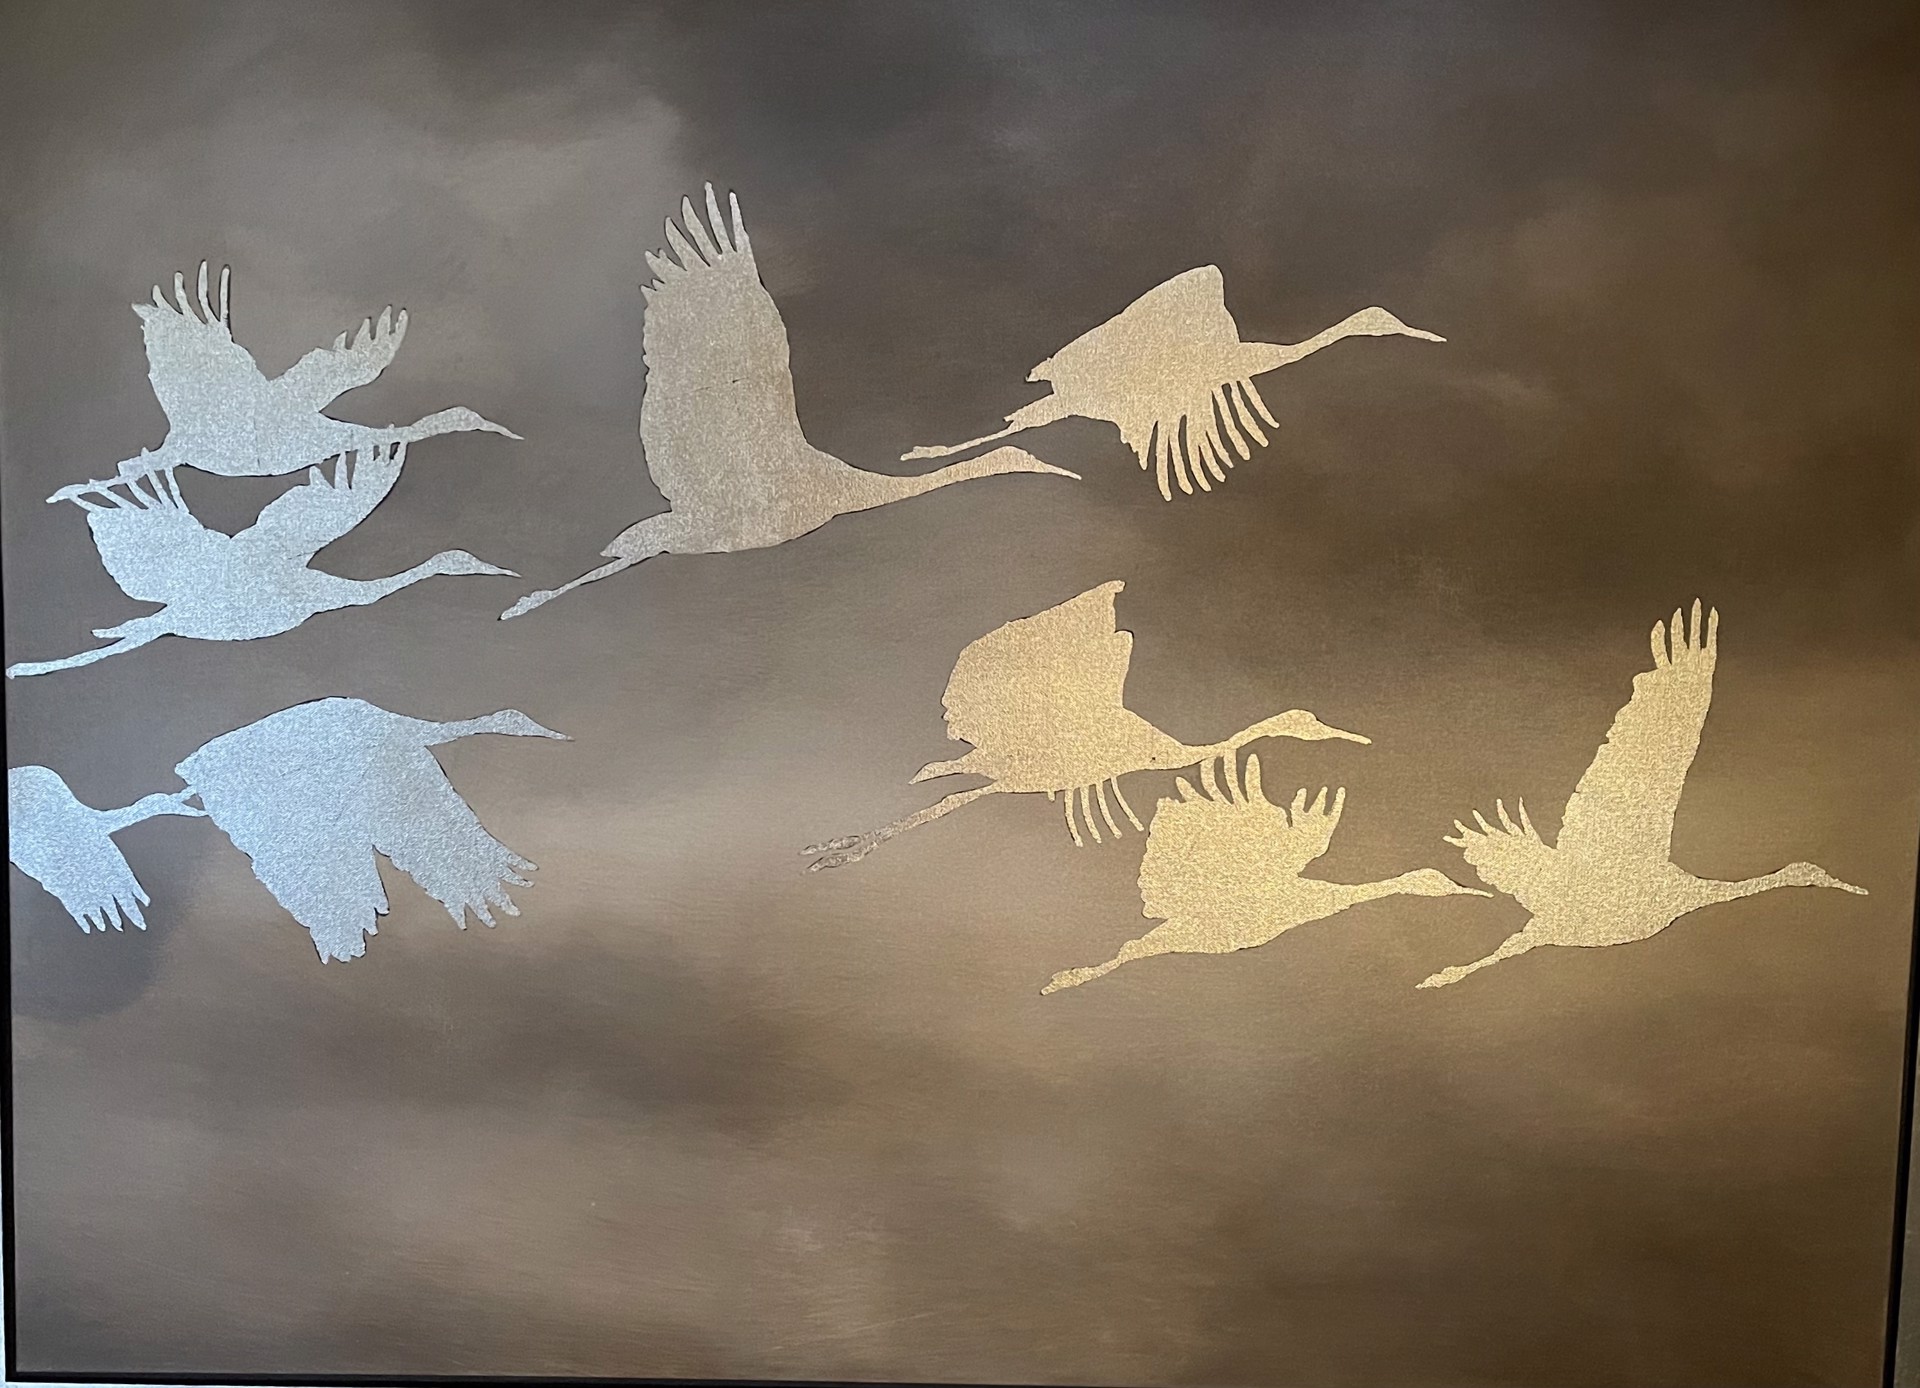 Cranes in Flight by Kurt Meer